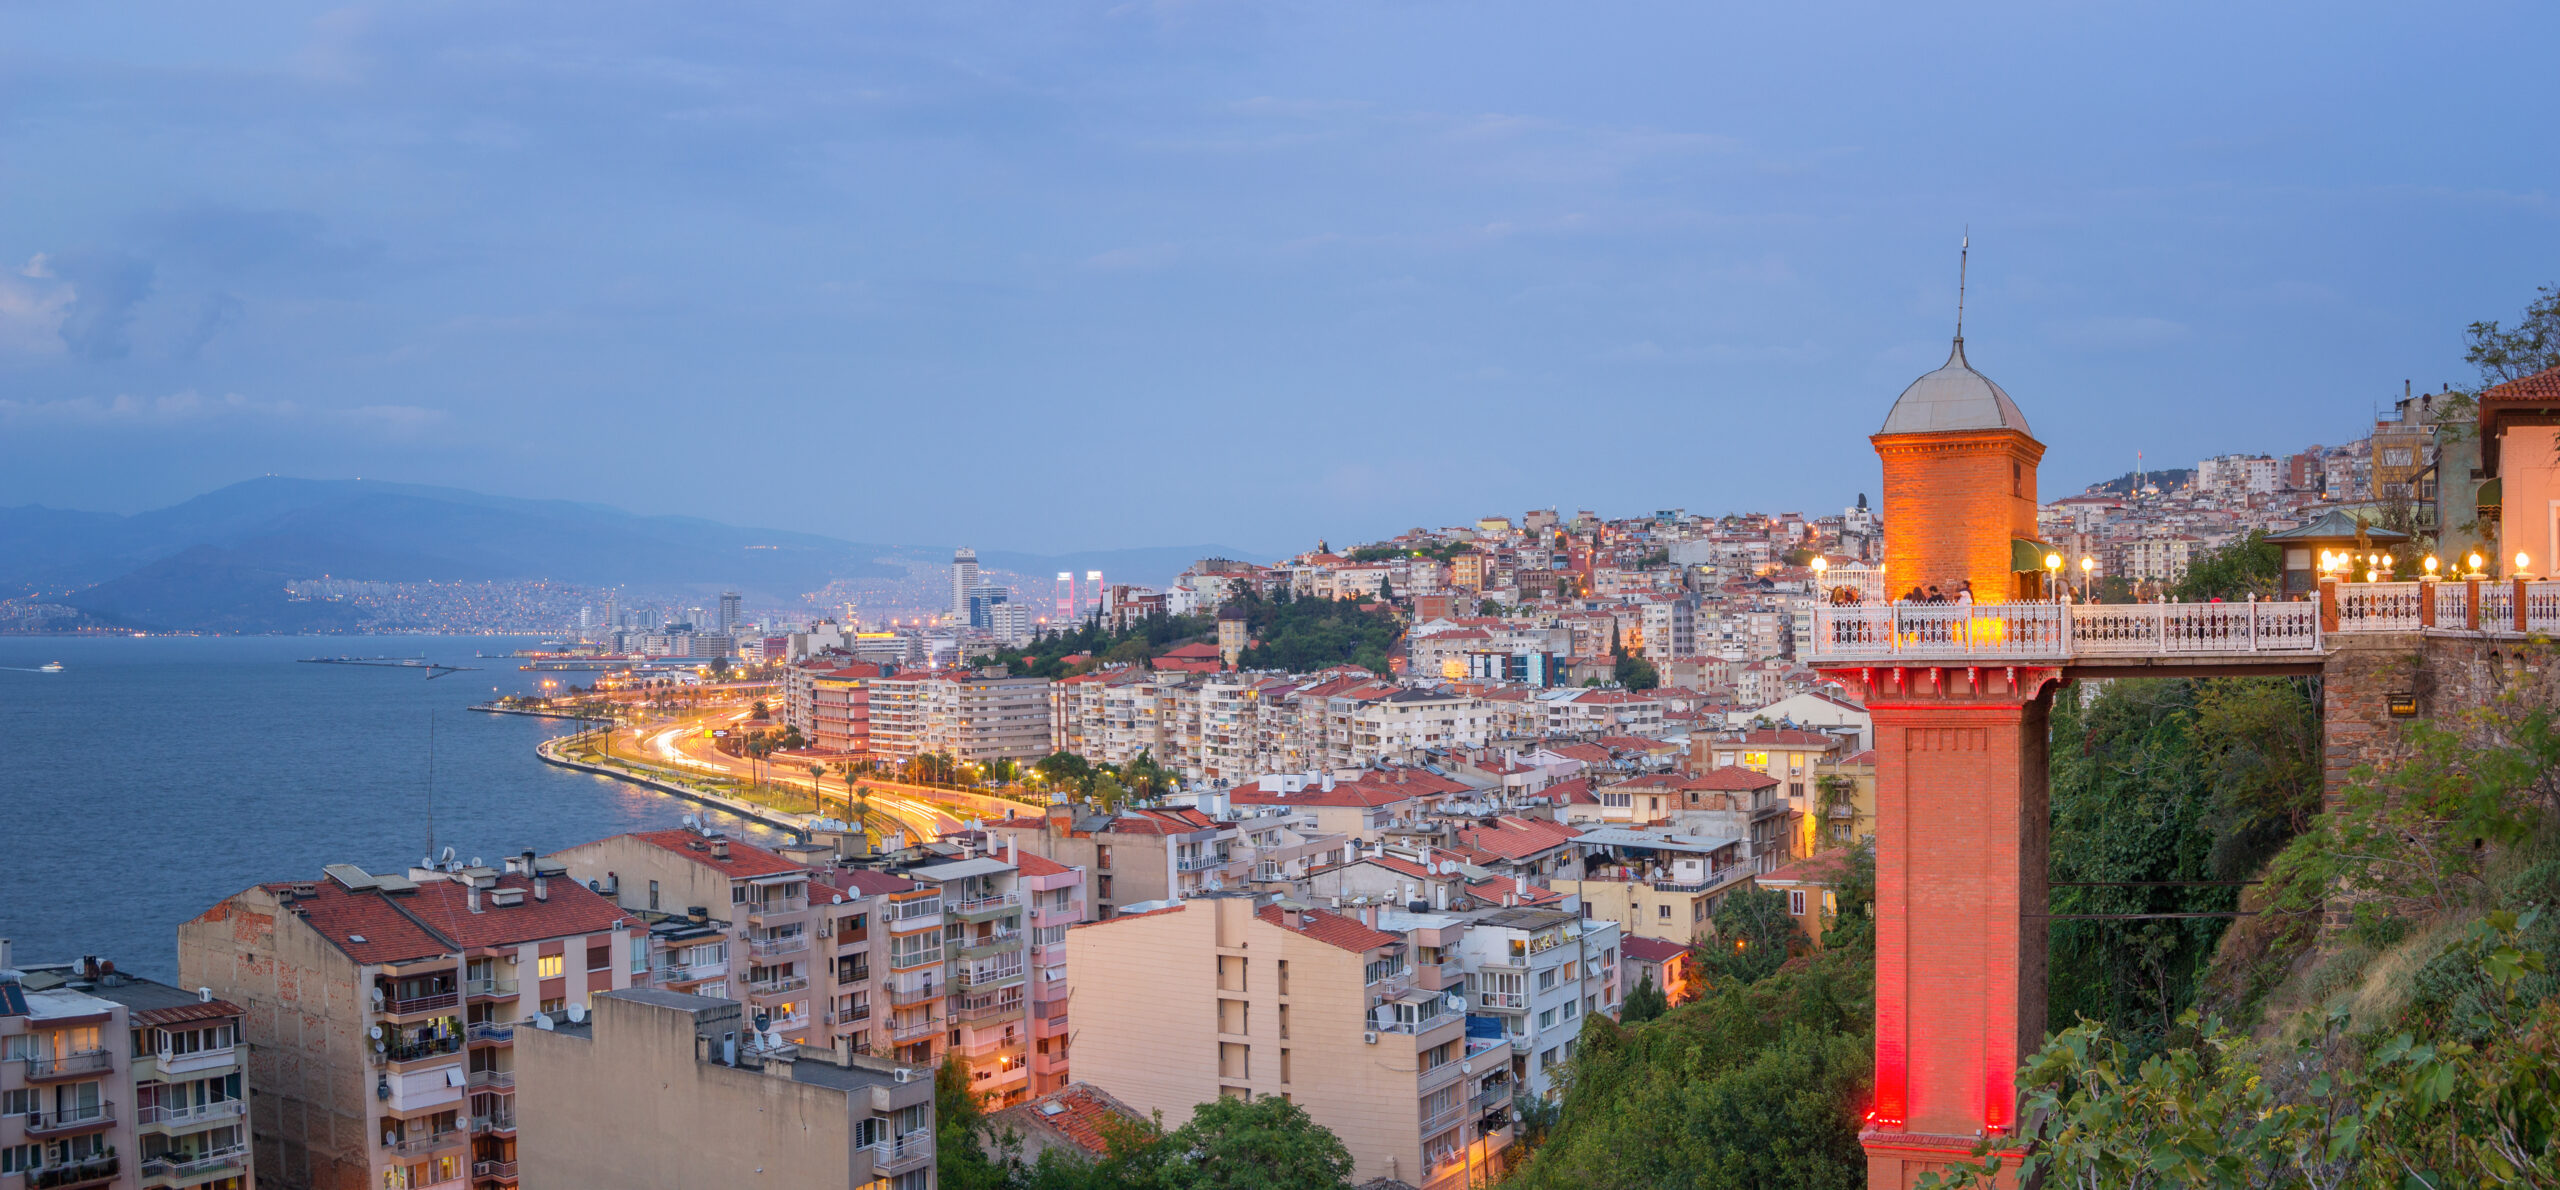 Izmir Urlaub: Entdecken Sie die faszinierenden Sehenswürdigkeiten dieser lebendigen Metropole